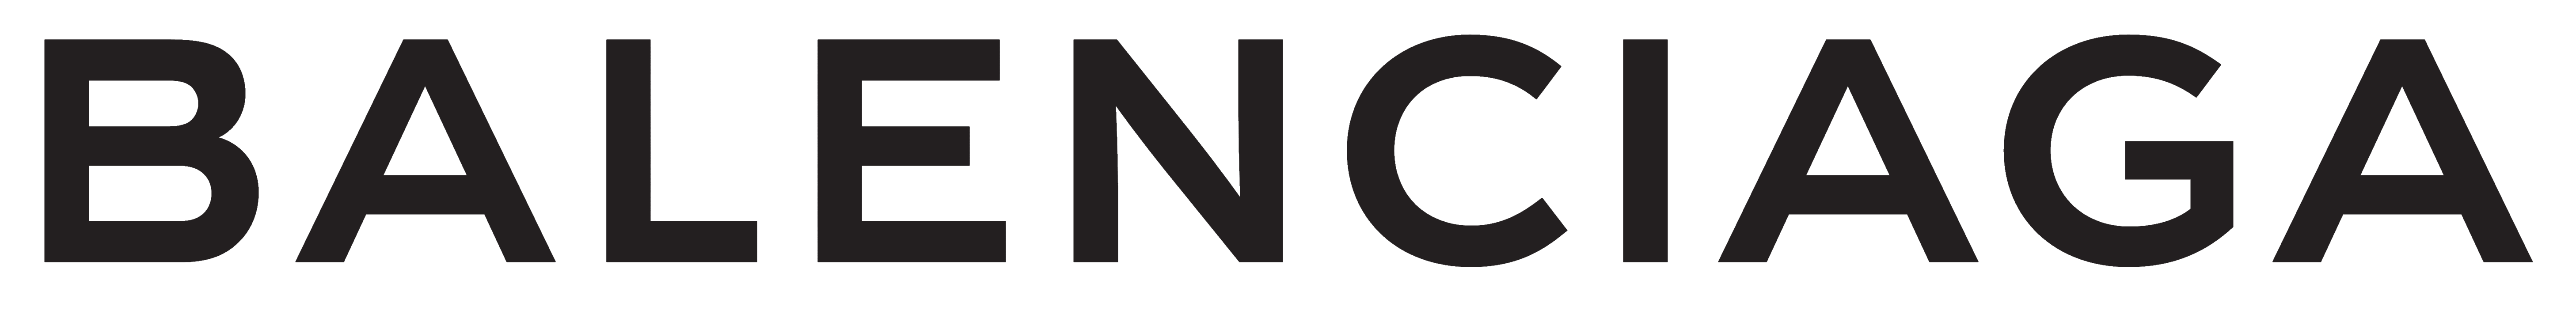 Balenciaga Logo Brand And Logotype